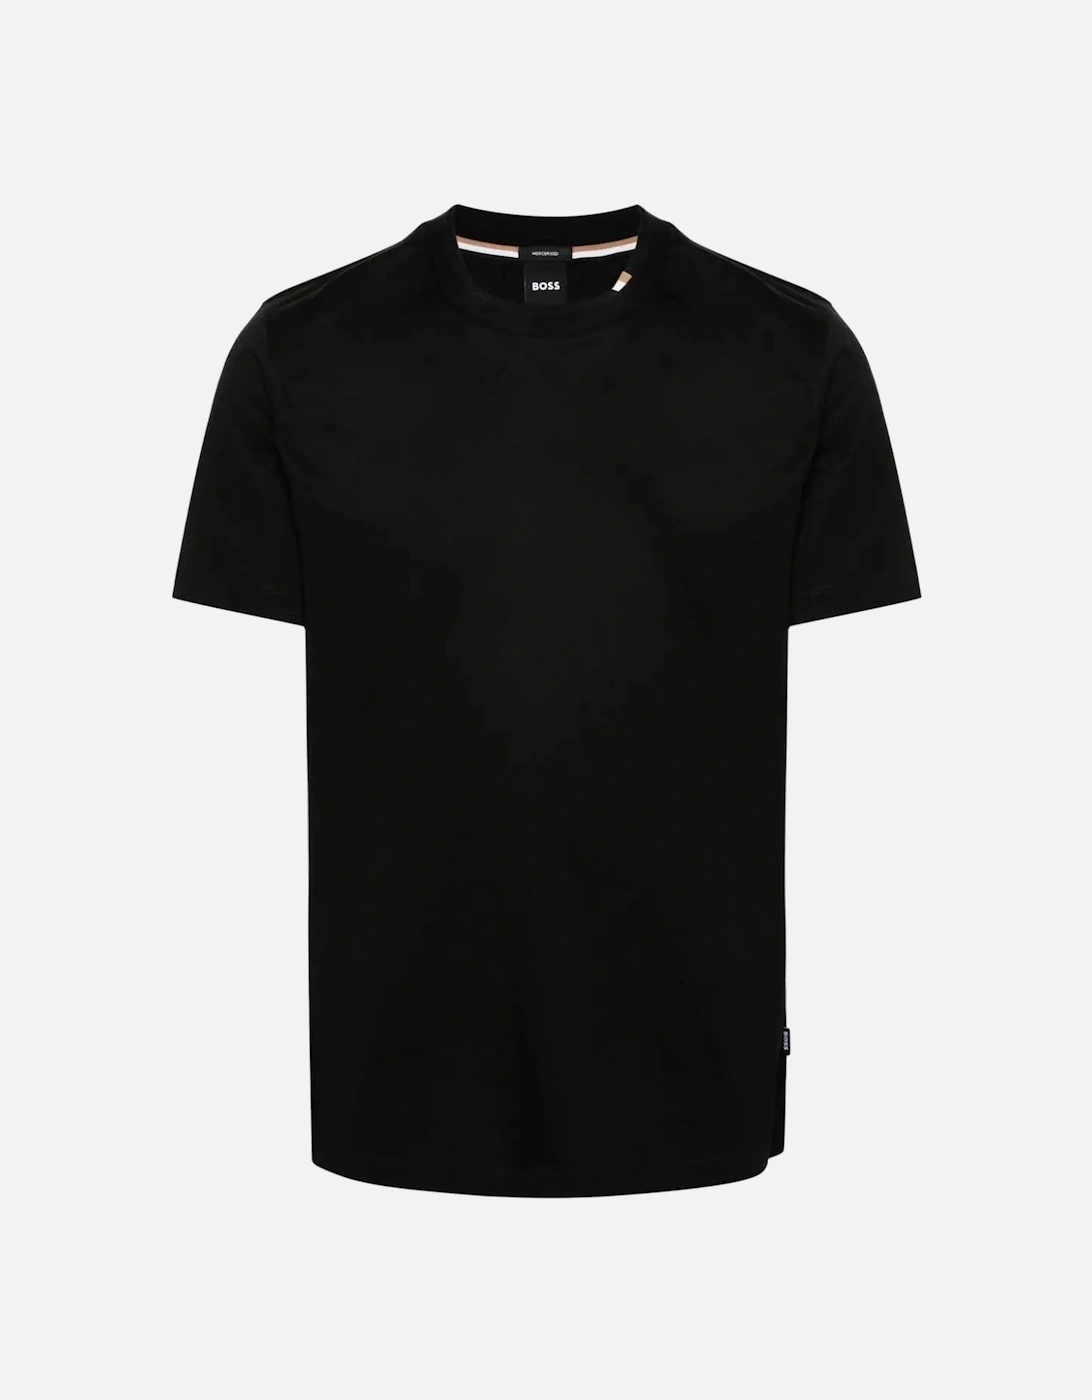 Tiburt 424 T-shirt Black, 8 of 7